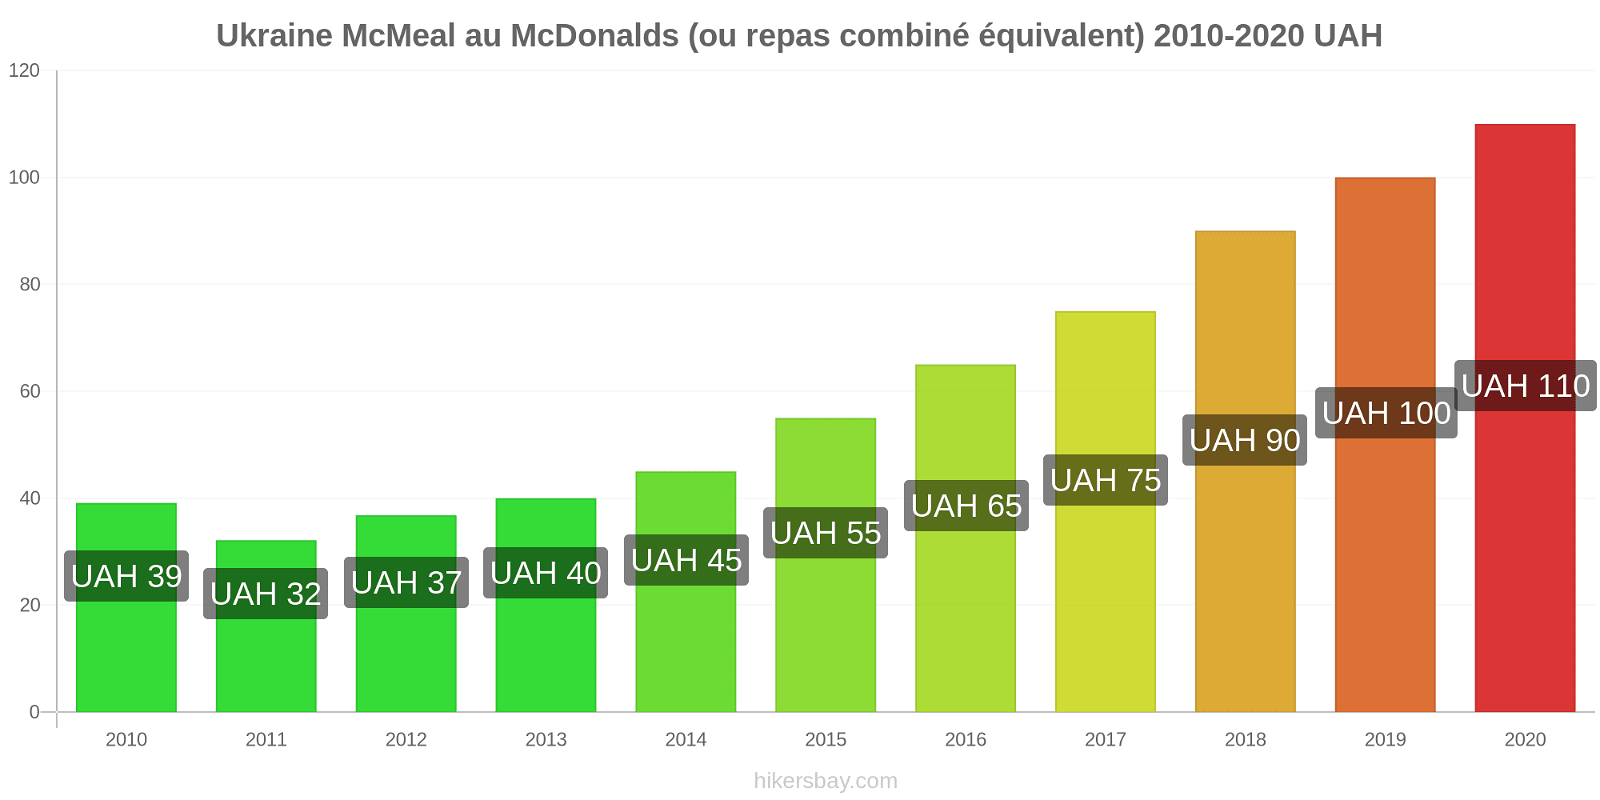 Ukraine changements de prix McMeal à McDonald ' s (ou Combo équivalent tourteau) hikersbay.com